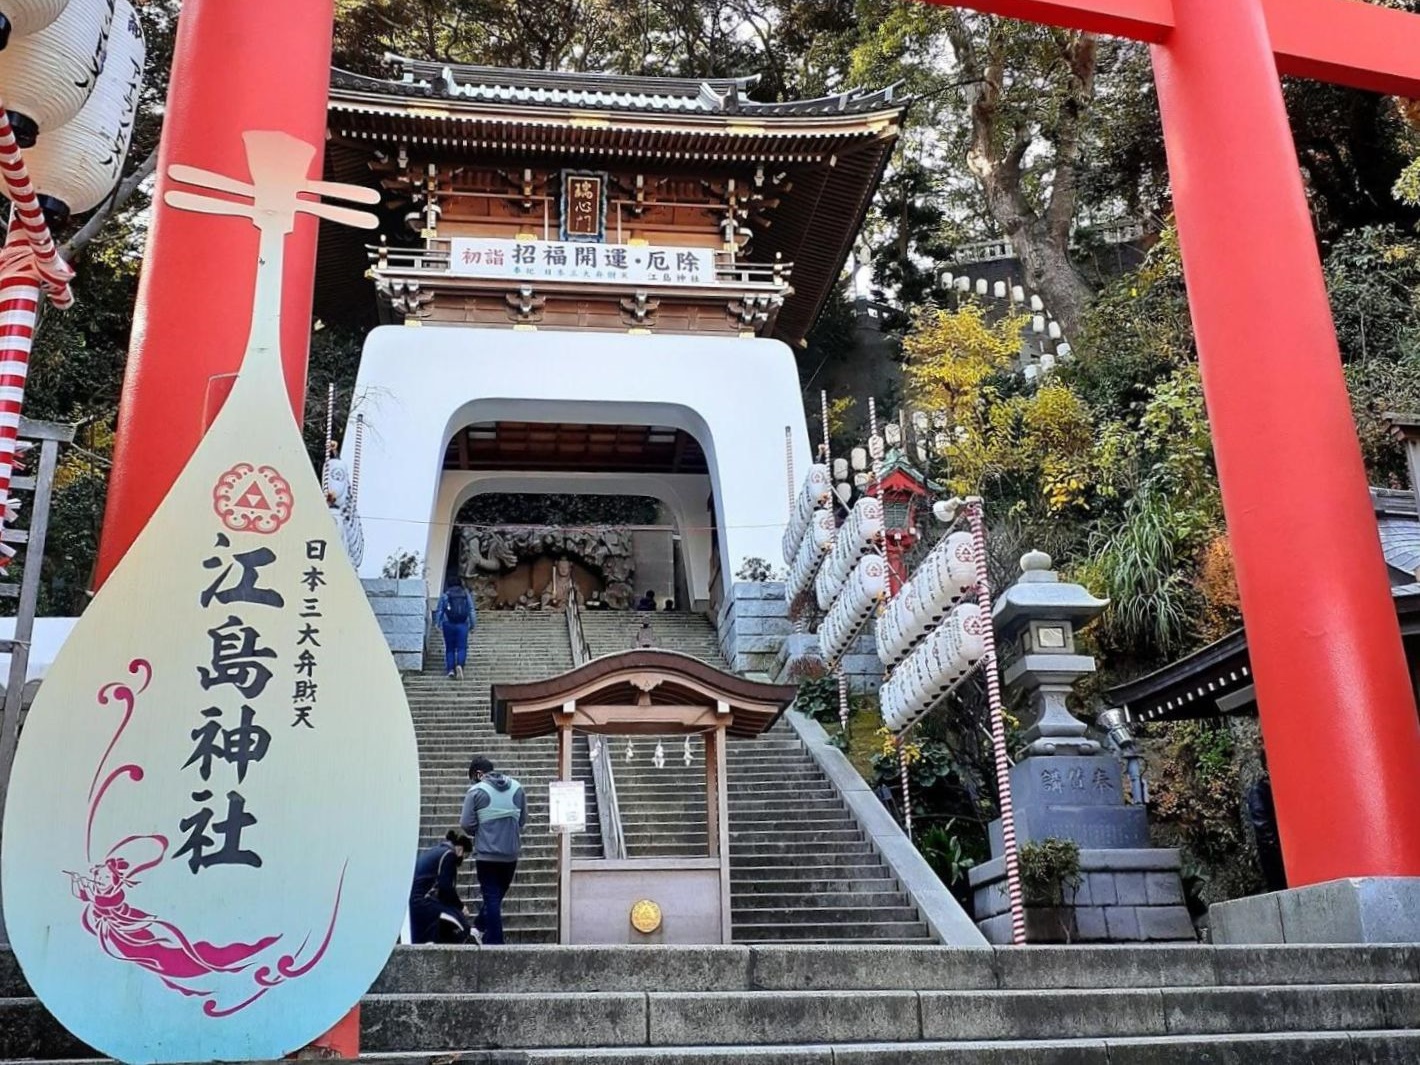 江島神社の御朱印 御朱印帳の種類 受付時間や場所 お守りなどについて 未来こんぱす